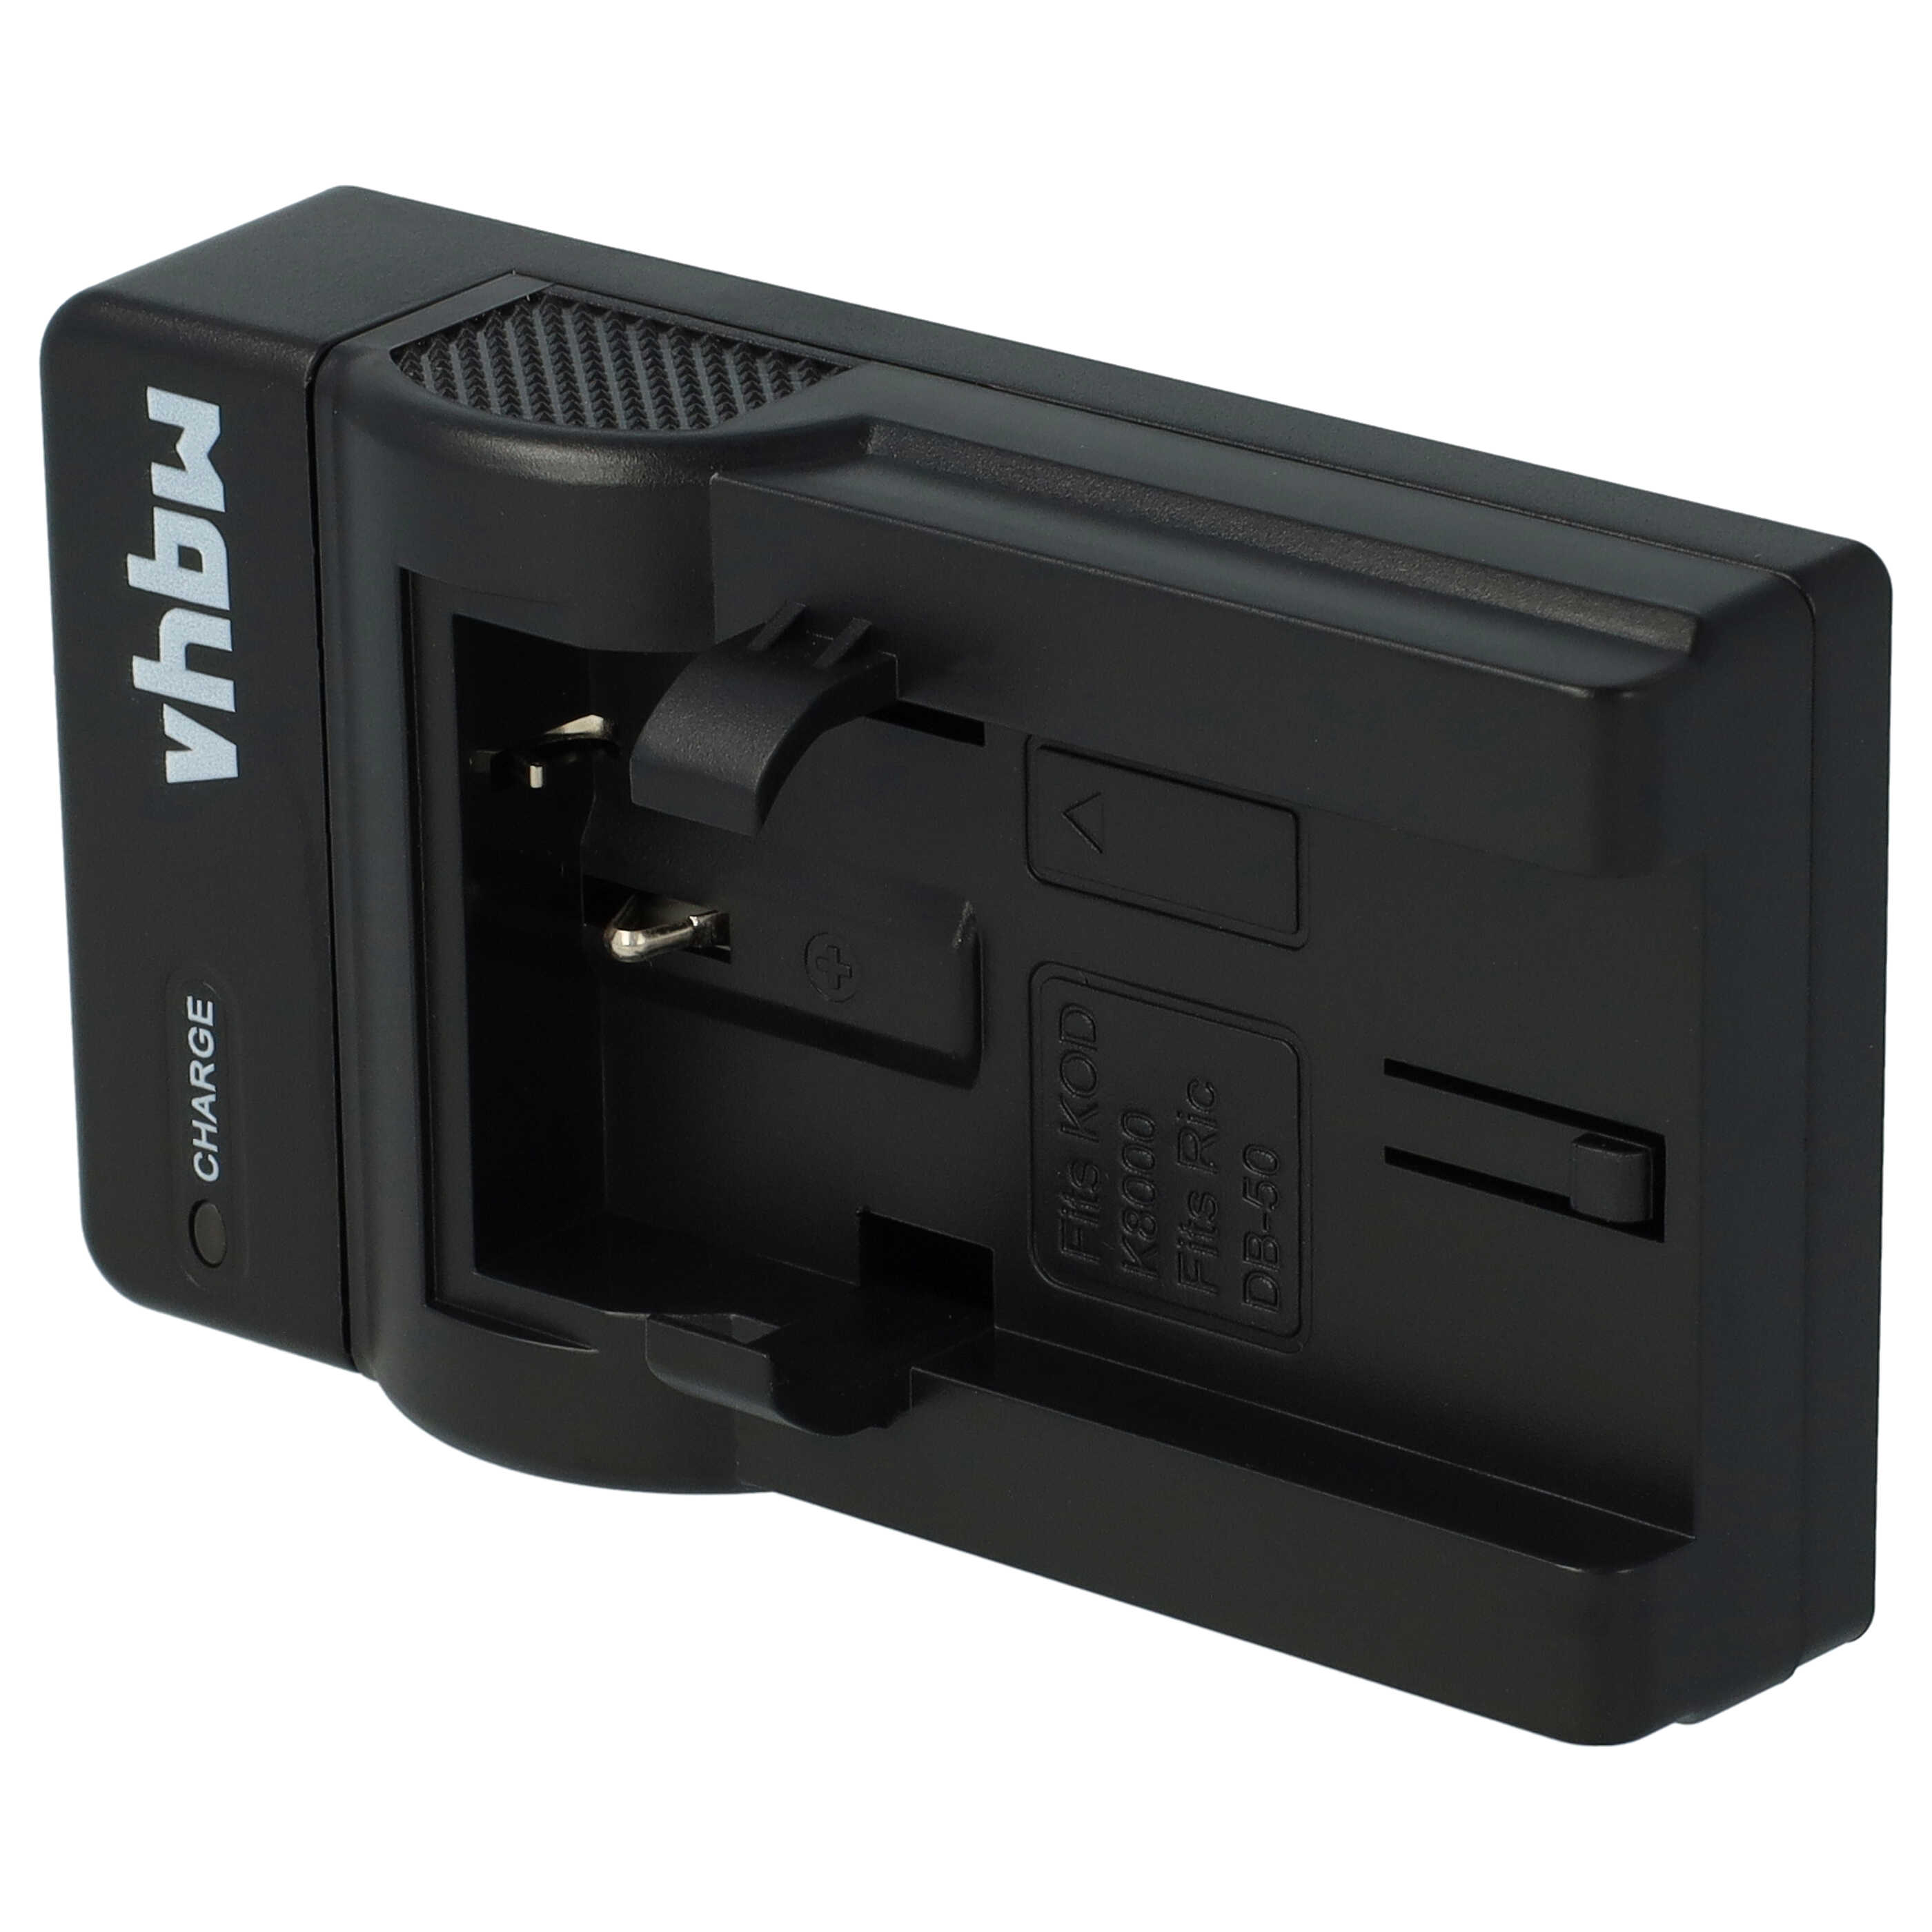 Akku Ladegerät passend für EasyShare Z612 Kamera u.a. - 0,5 A, 4,2 V